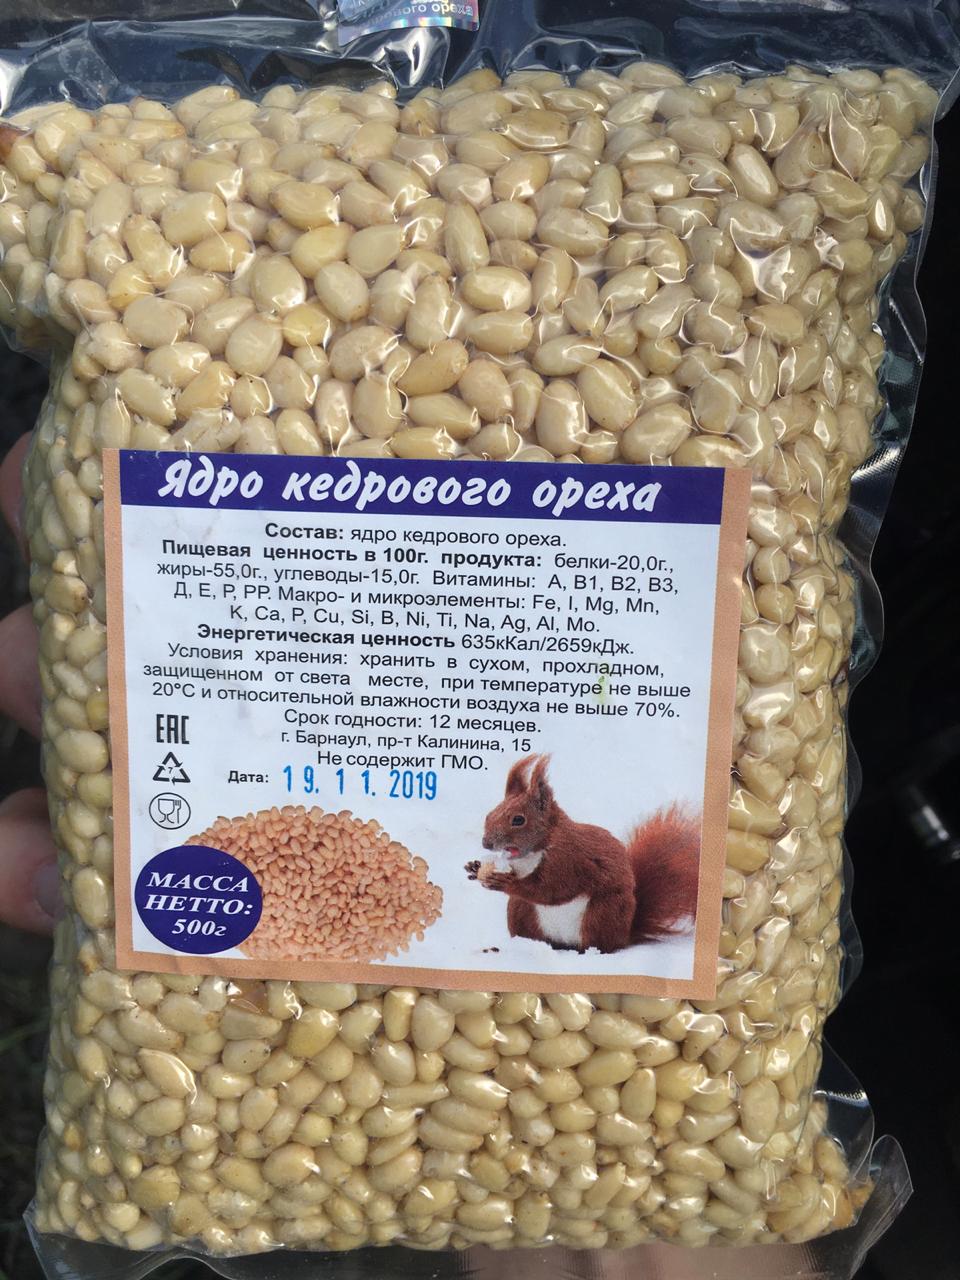 Контрабандисты пытались переправить из России более тонны орехов и сухофруктов, но сбежали. Фото: ГПСУ